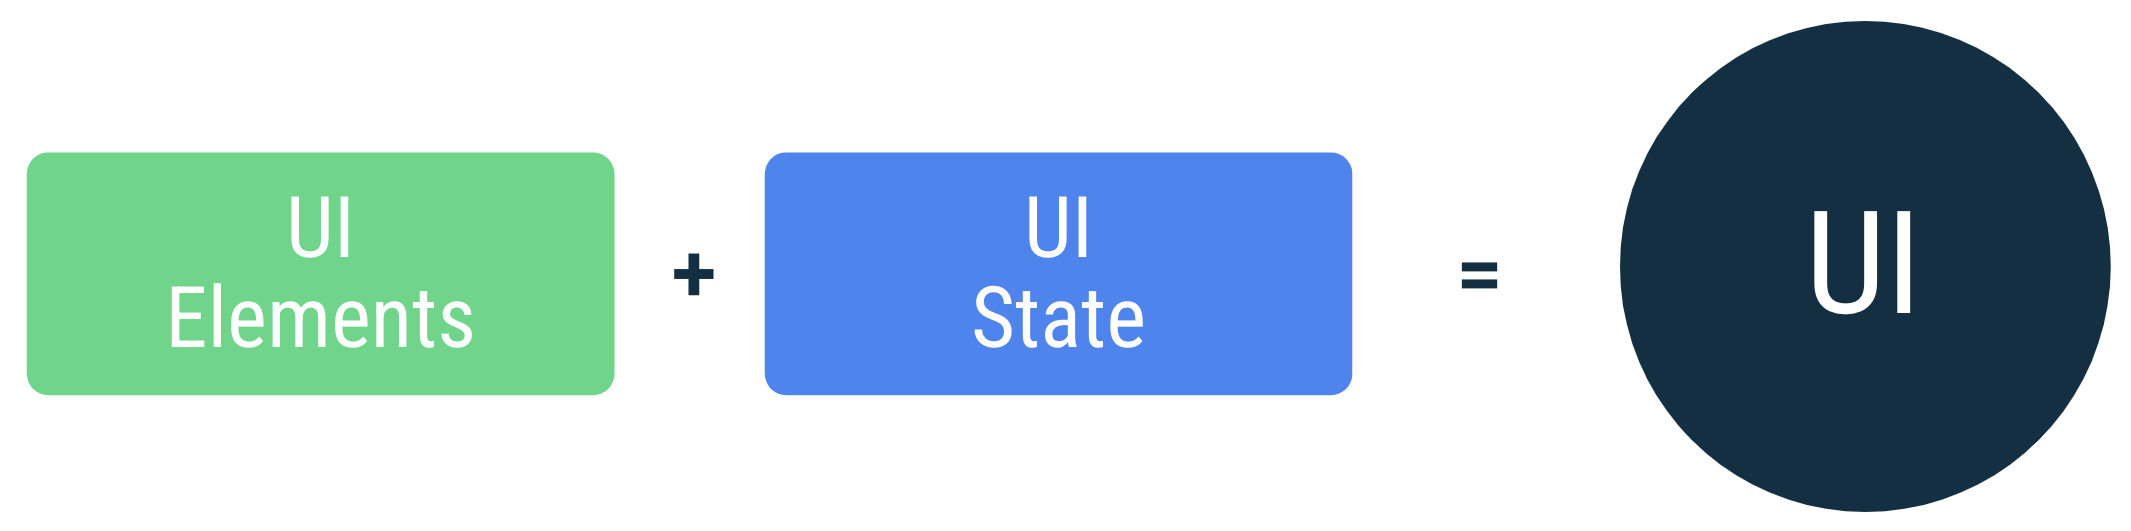 L'UI est le résultat d'une liaison entre des éléments d'interface utilisateur et un état d'interface utilisateur.